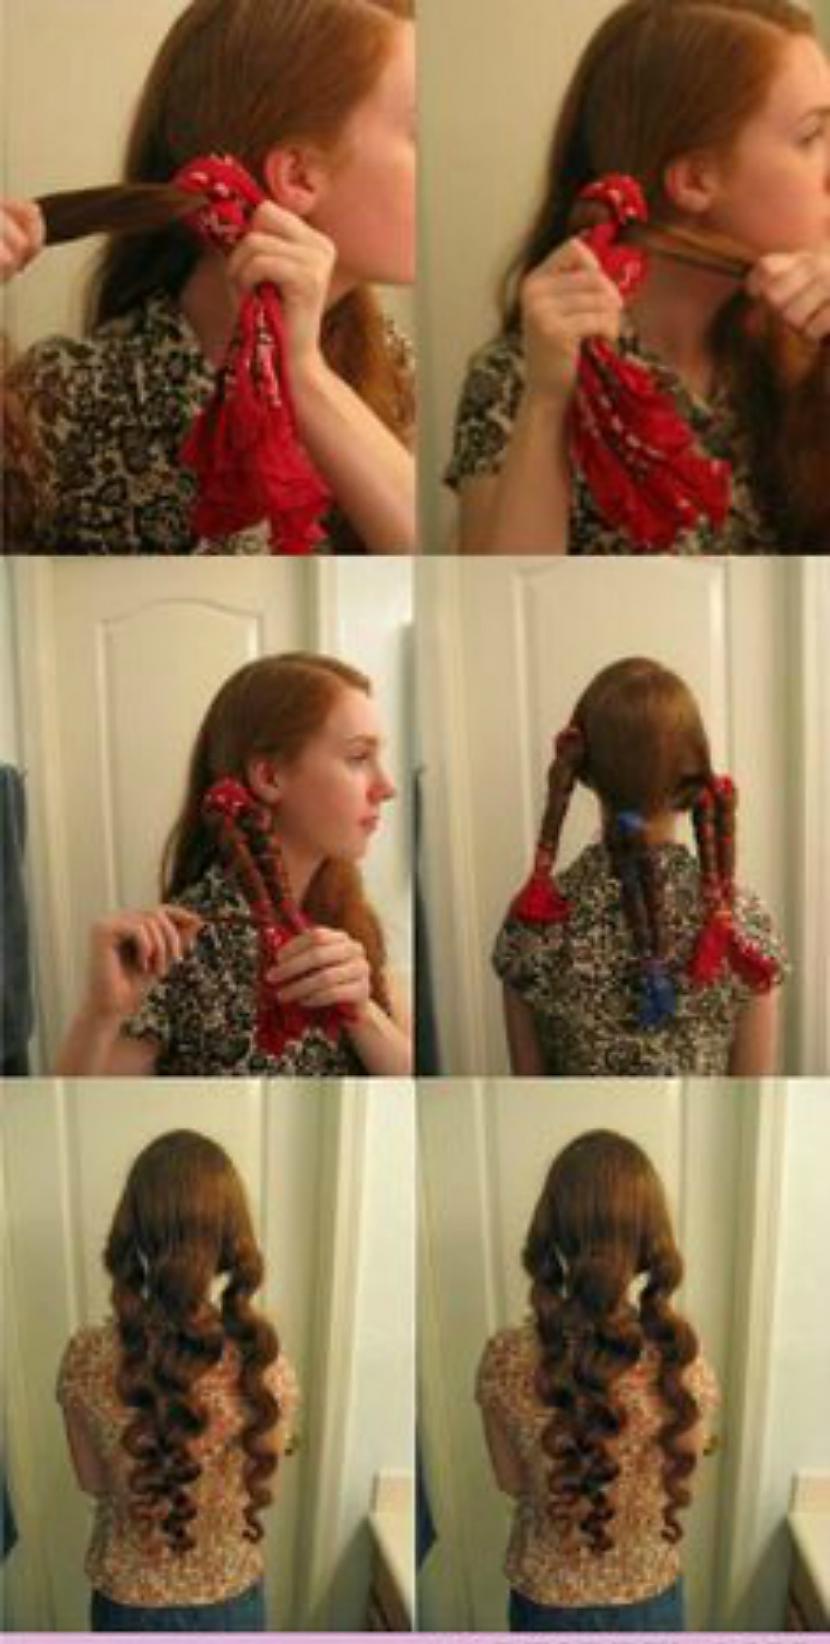 lakatlokas vajadzēs lakatus... Autors: MsSparkleyGirl Vairāk kā 10 matu ielokošanas veidi.